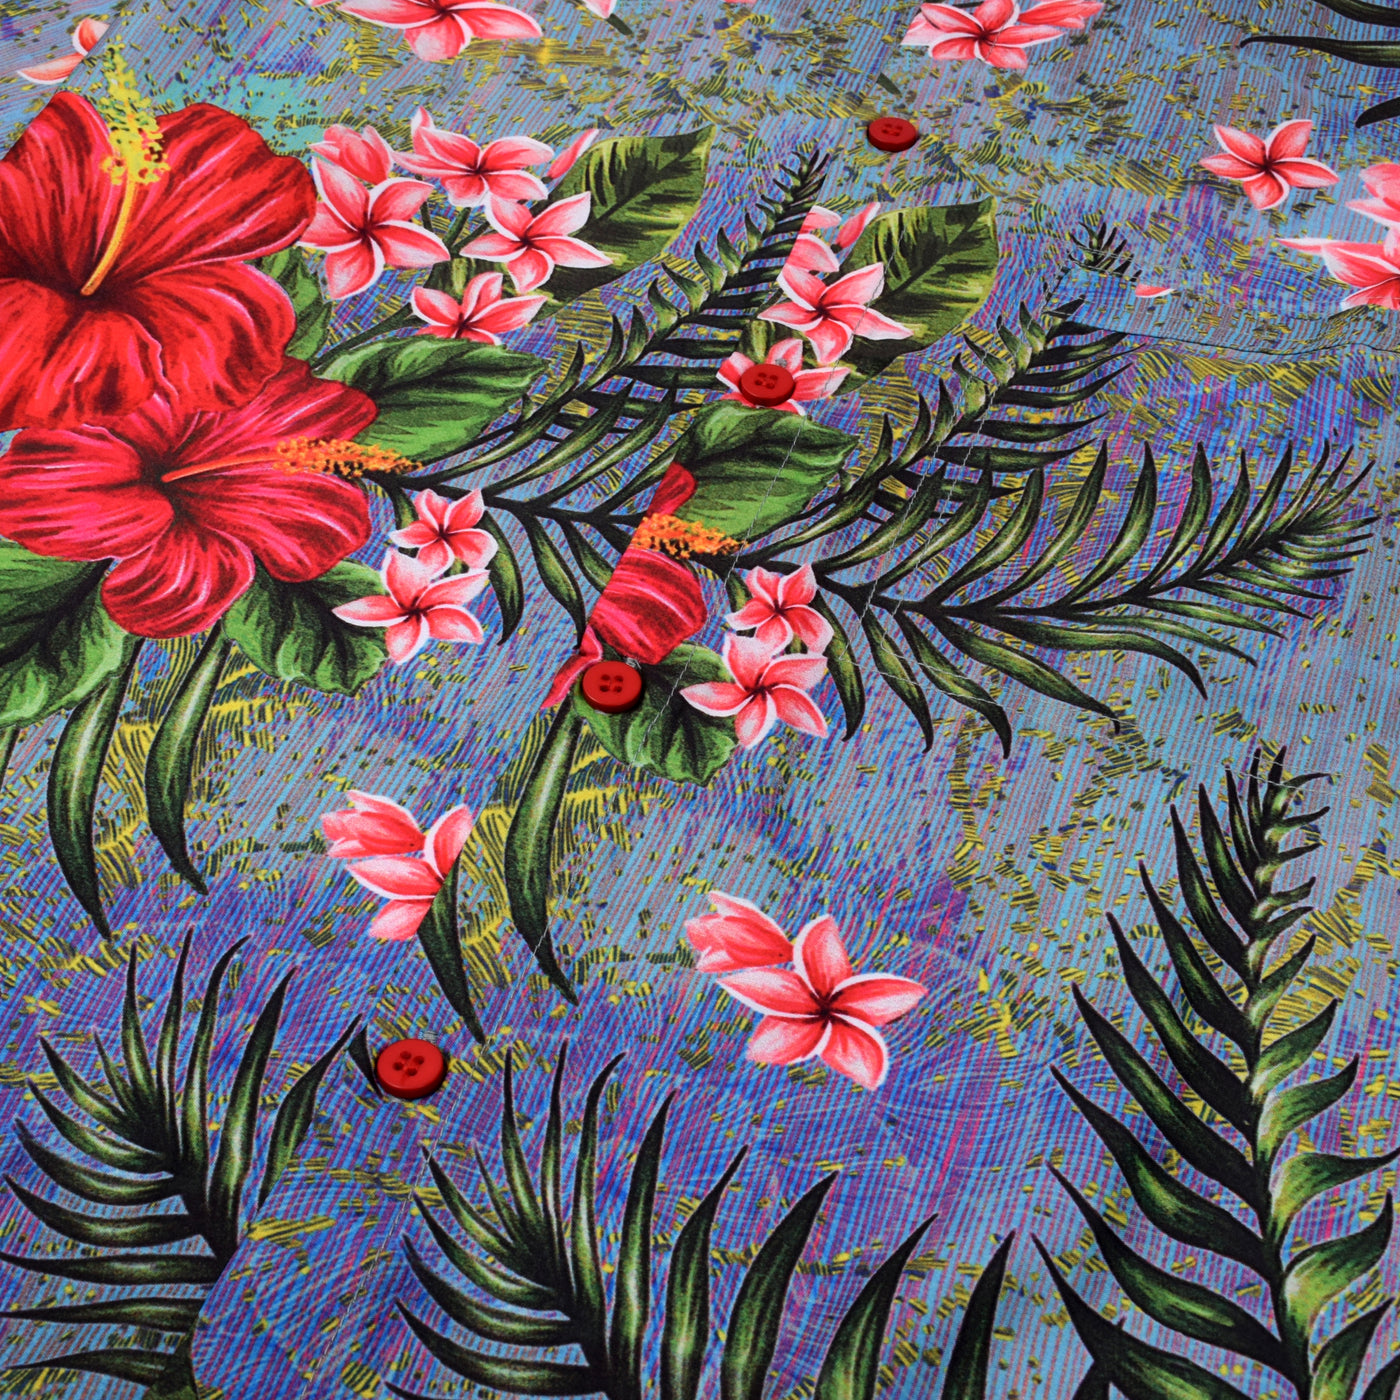 The Flower Power Hawaiian Shirt